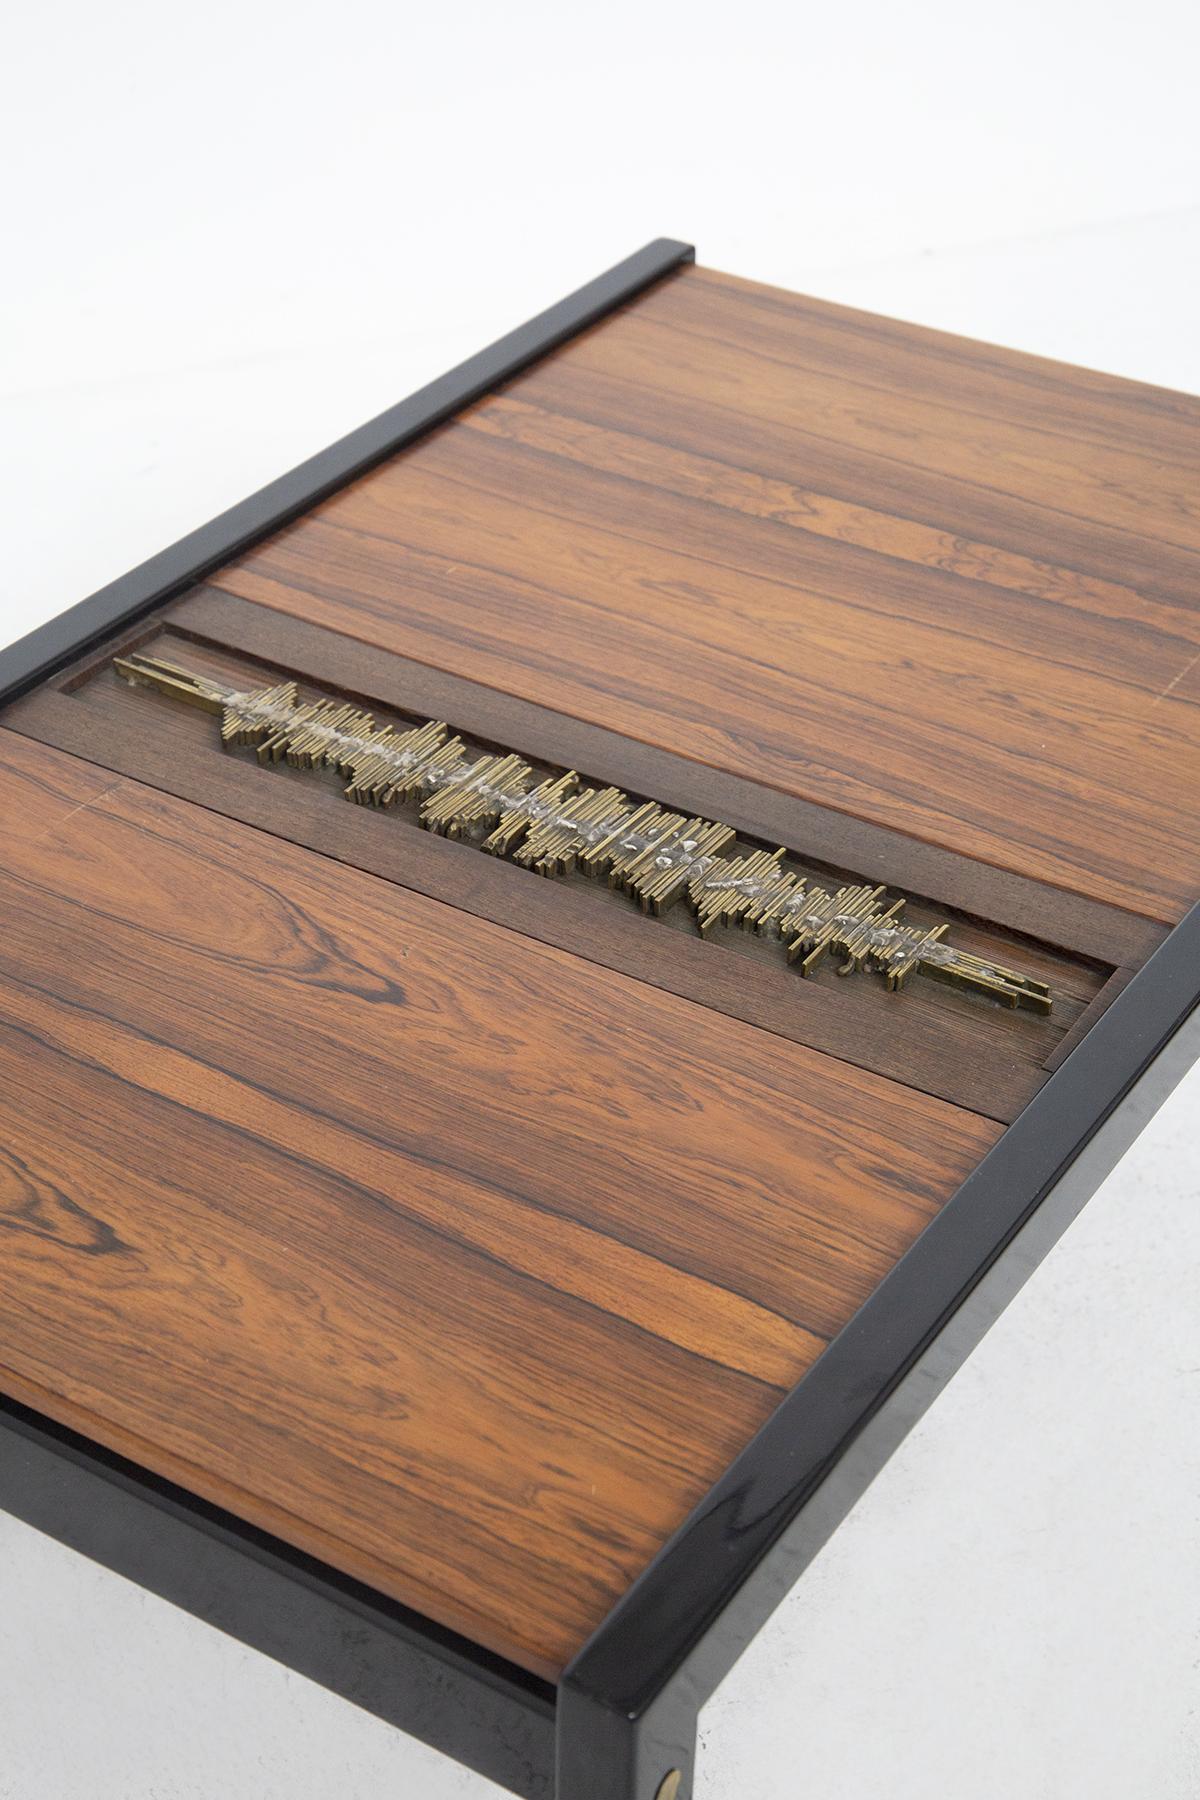 Magnifique table basse en bois et laiton conçue par Osvaldo Borsani et Eugenio Gerli pour la manufacture italienne de qualité, en 1963, fait partie du modèle T68.
La table basse présente une structure rectangulaire classique en métal noir, très